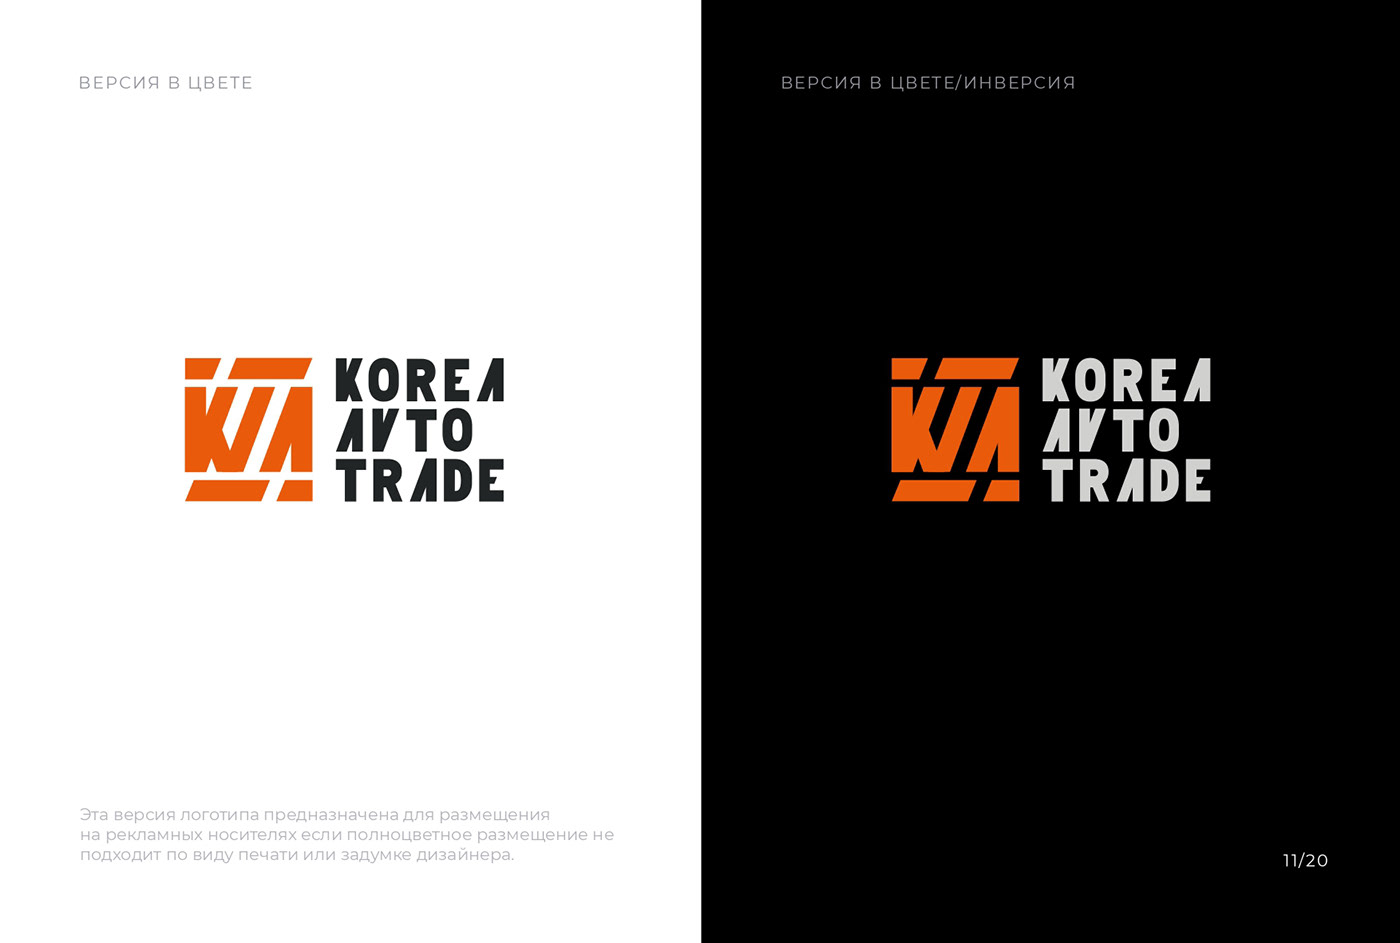 Логотип. Korea Avto Trade Компания по продаже Авто.
Логотип в цвете
